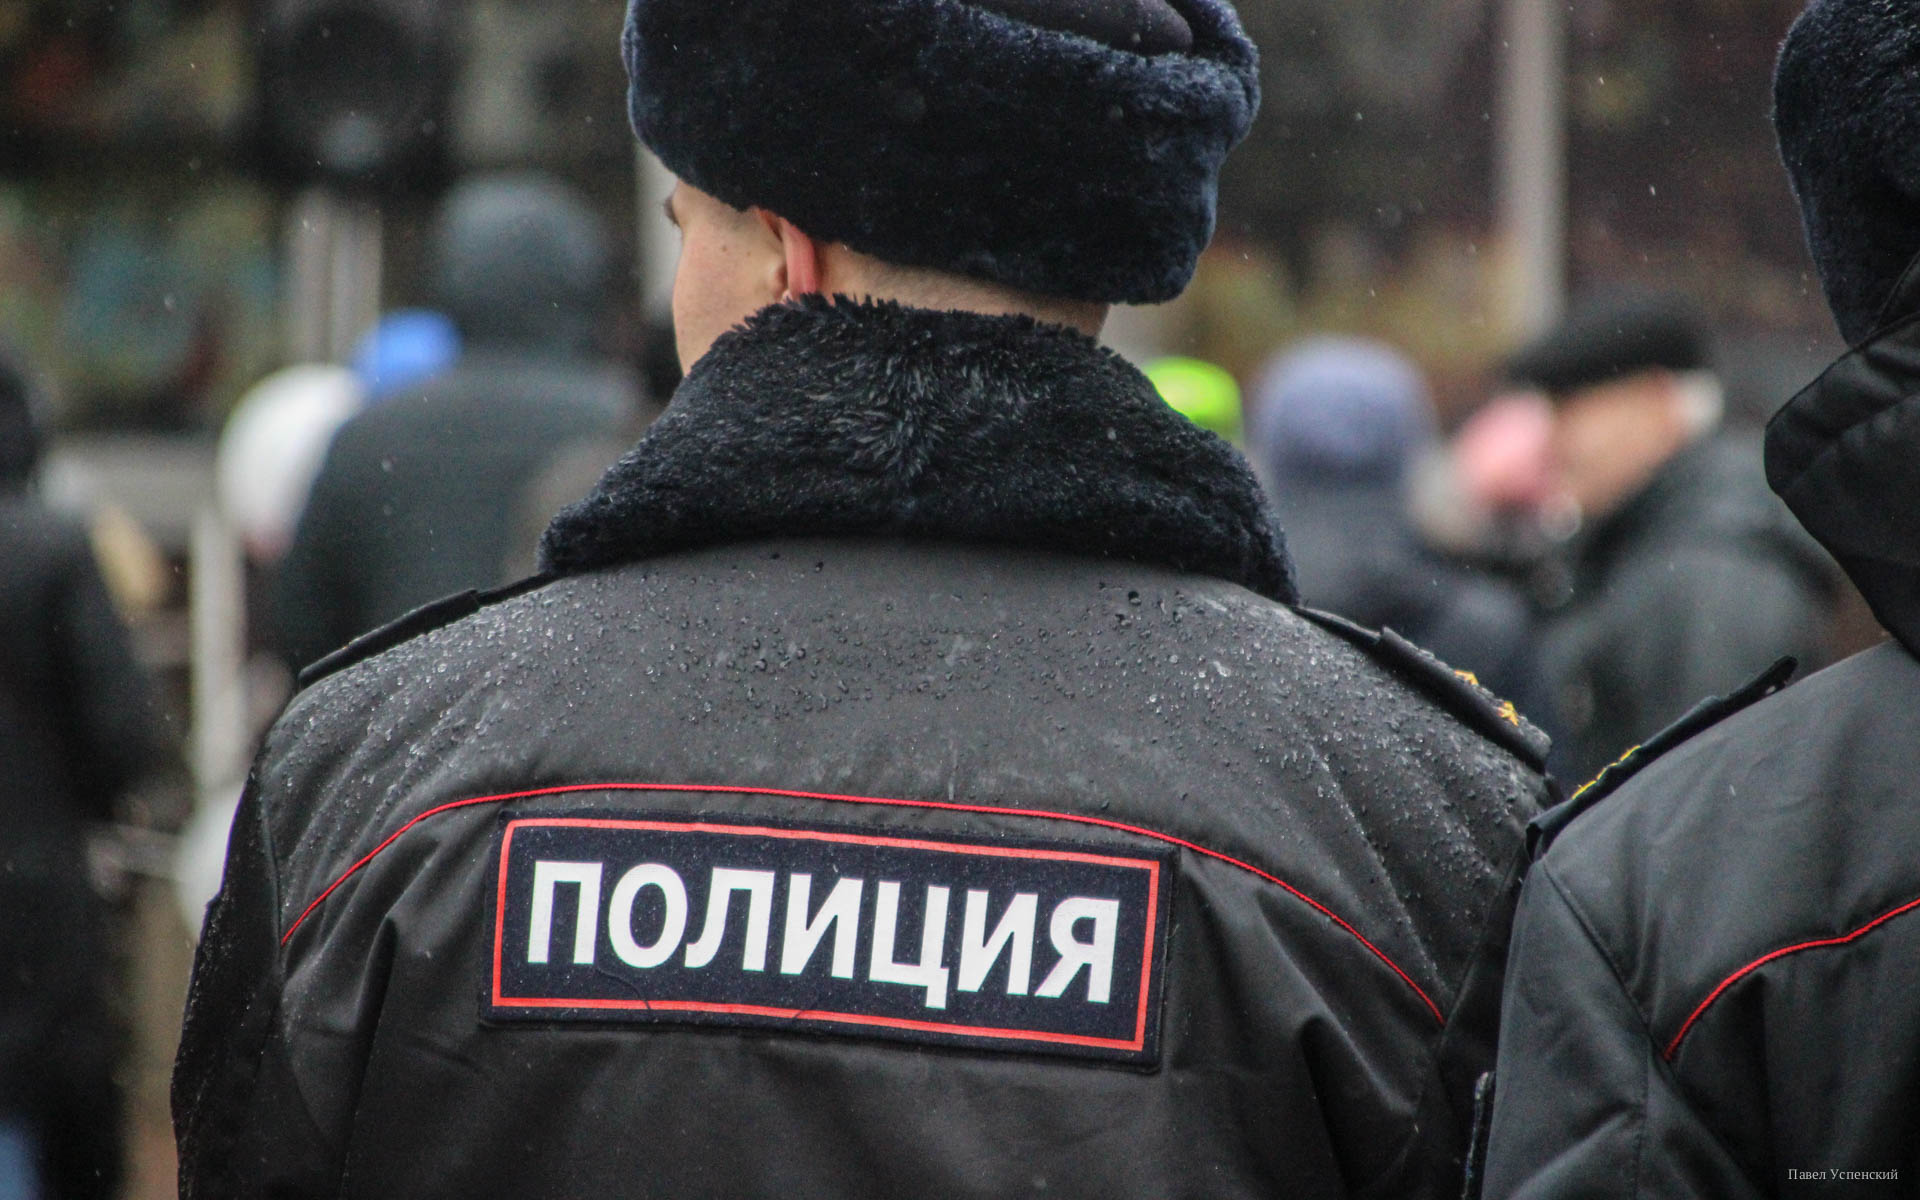 Житель Тверской области избил и ограбил в Москве женщину, забрав часы стоимостью в 600 тысяч рублей